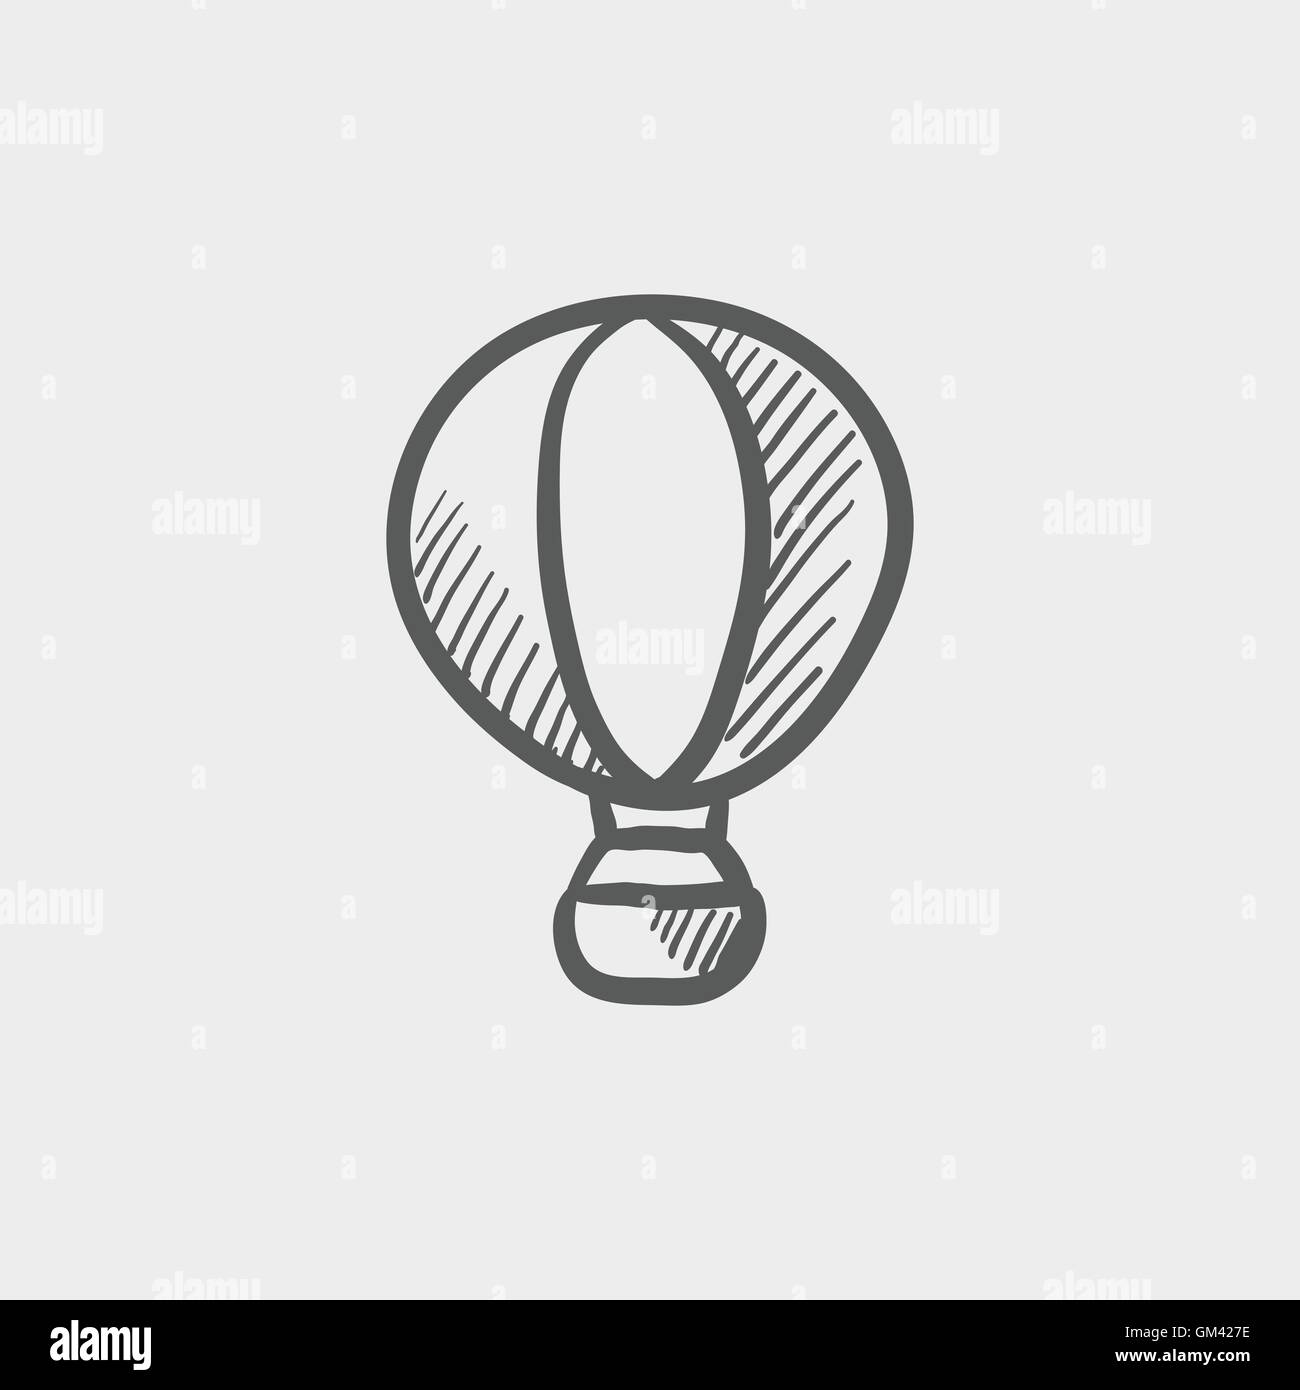 Hot air balloon sketch icon Stock Vector